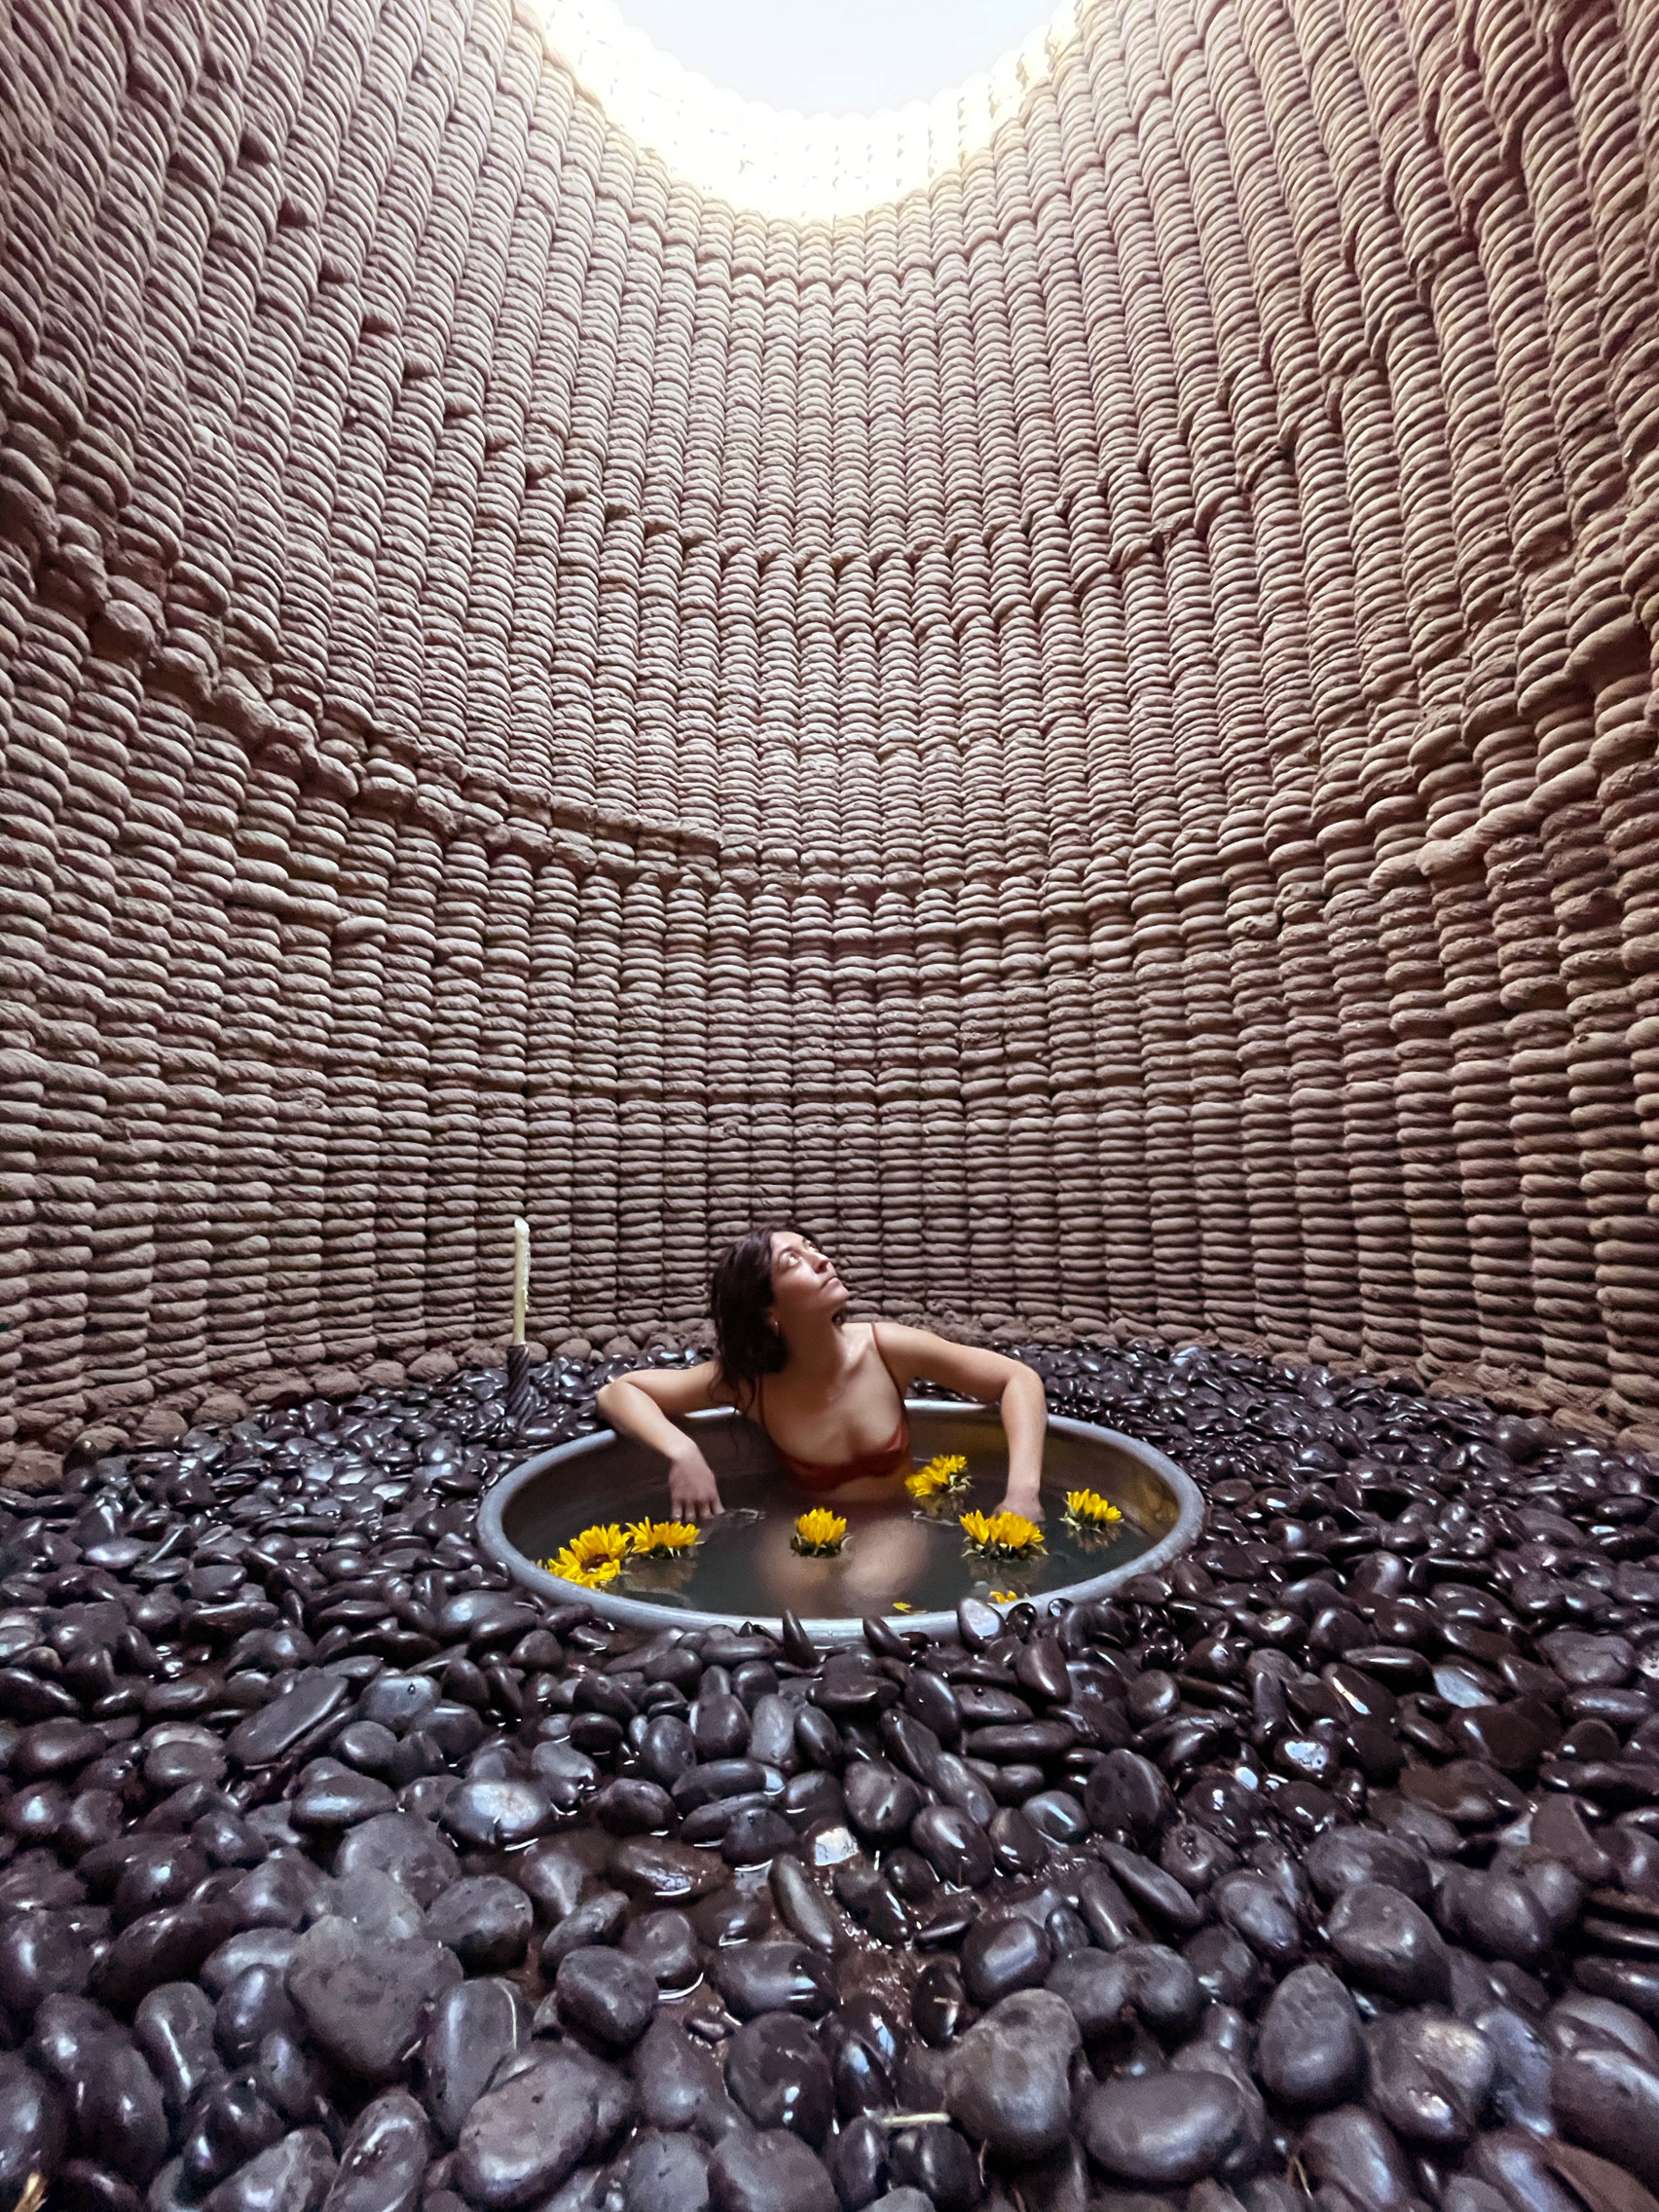 Bath in a 3D printed desert hut